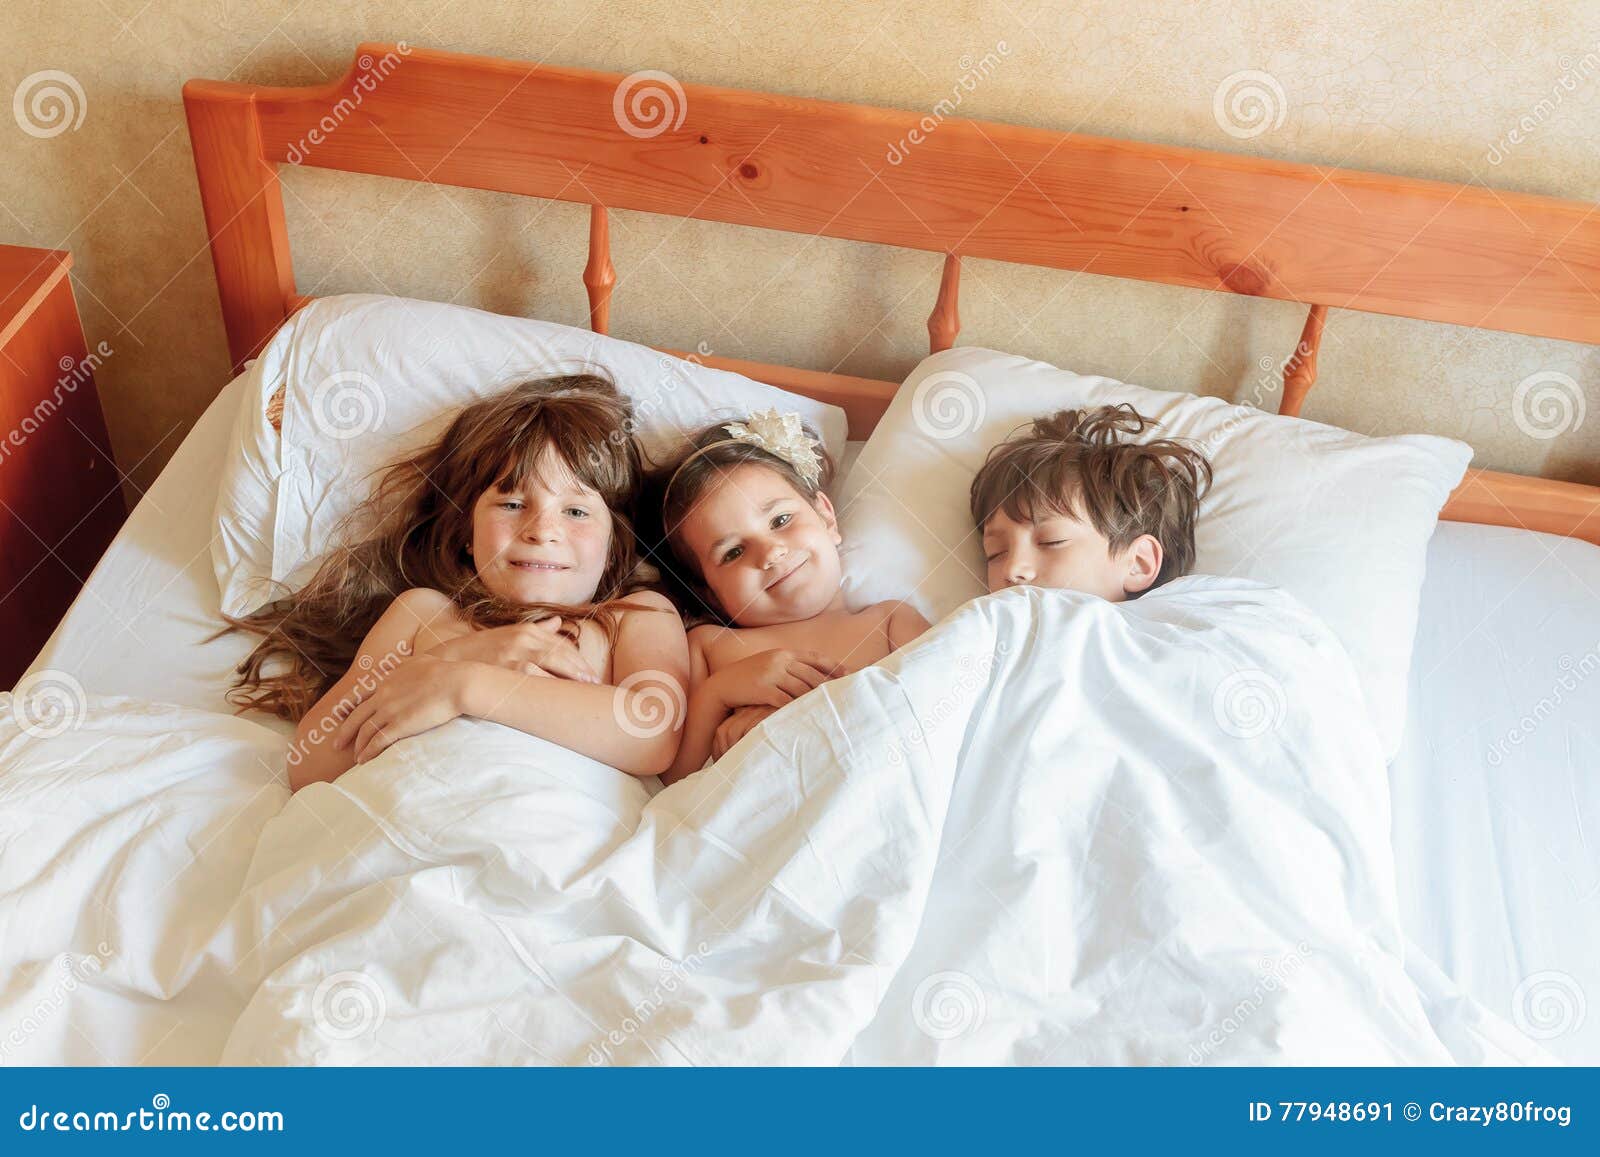 Сестра пришла брату кровать. Маленькая в постели. Кровать для мальчика. Мальчик с девочкой в постельке.